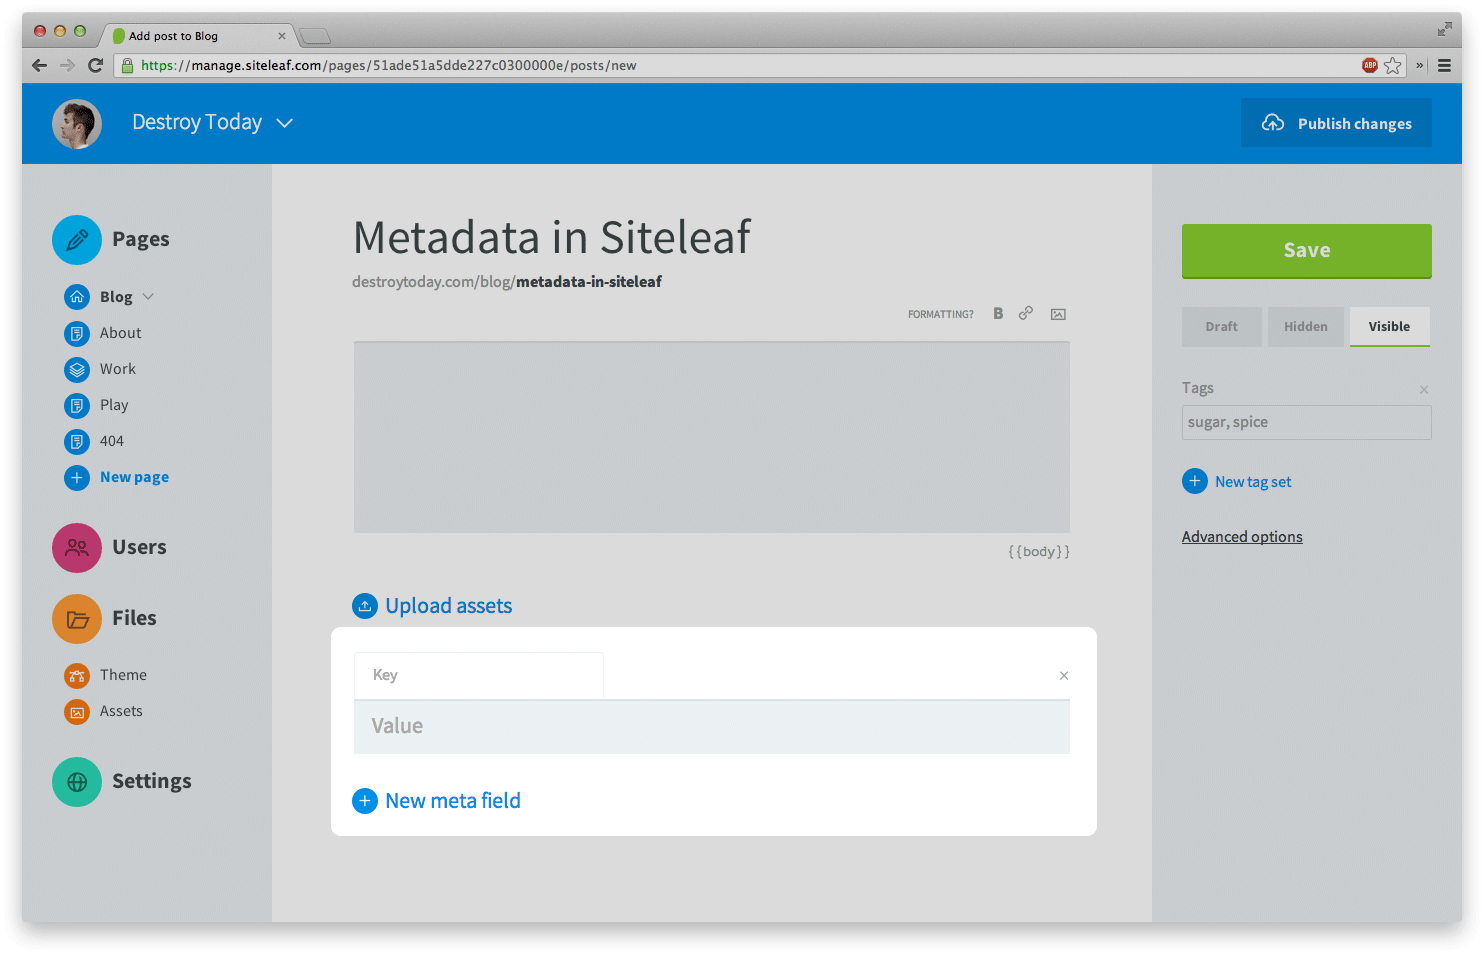 Metadata in Siteleaf